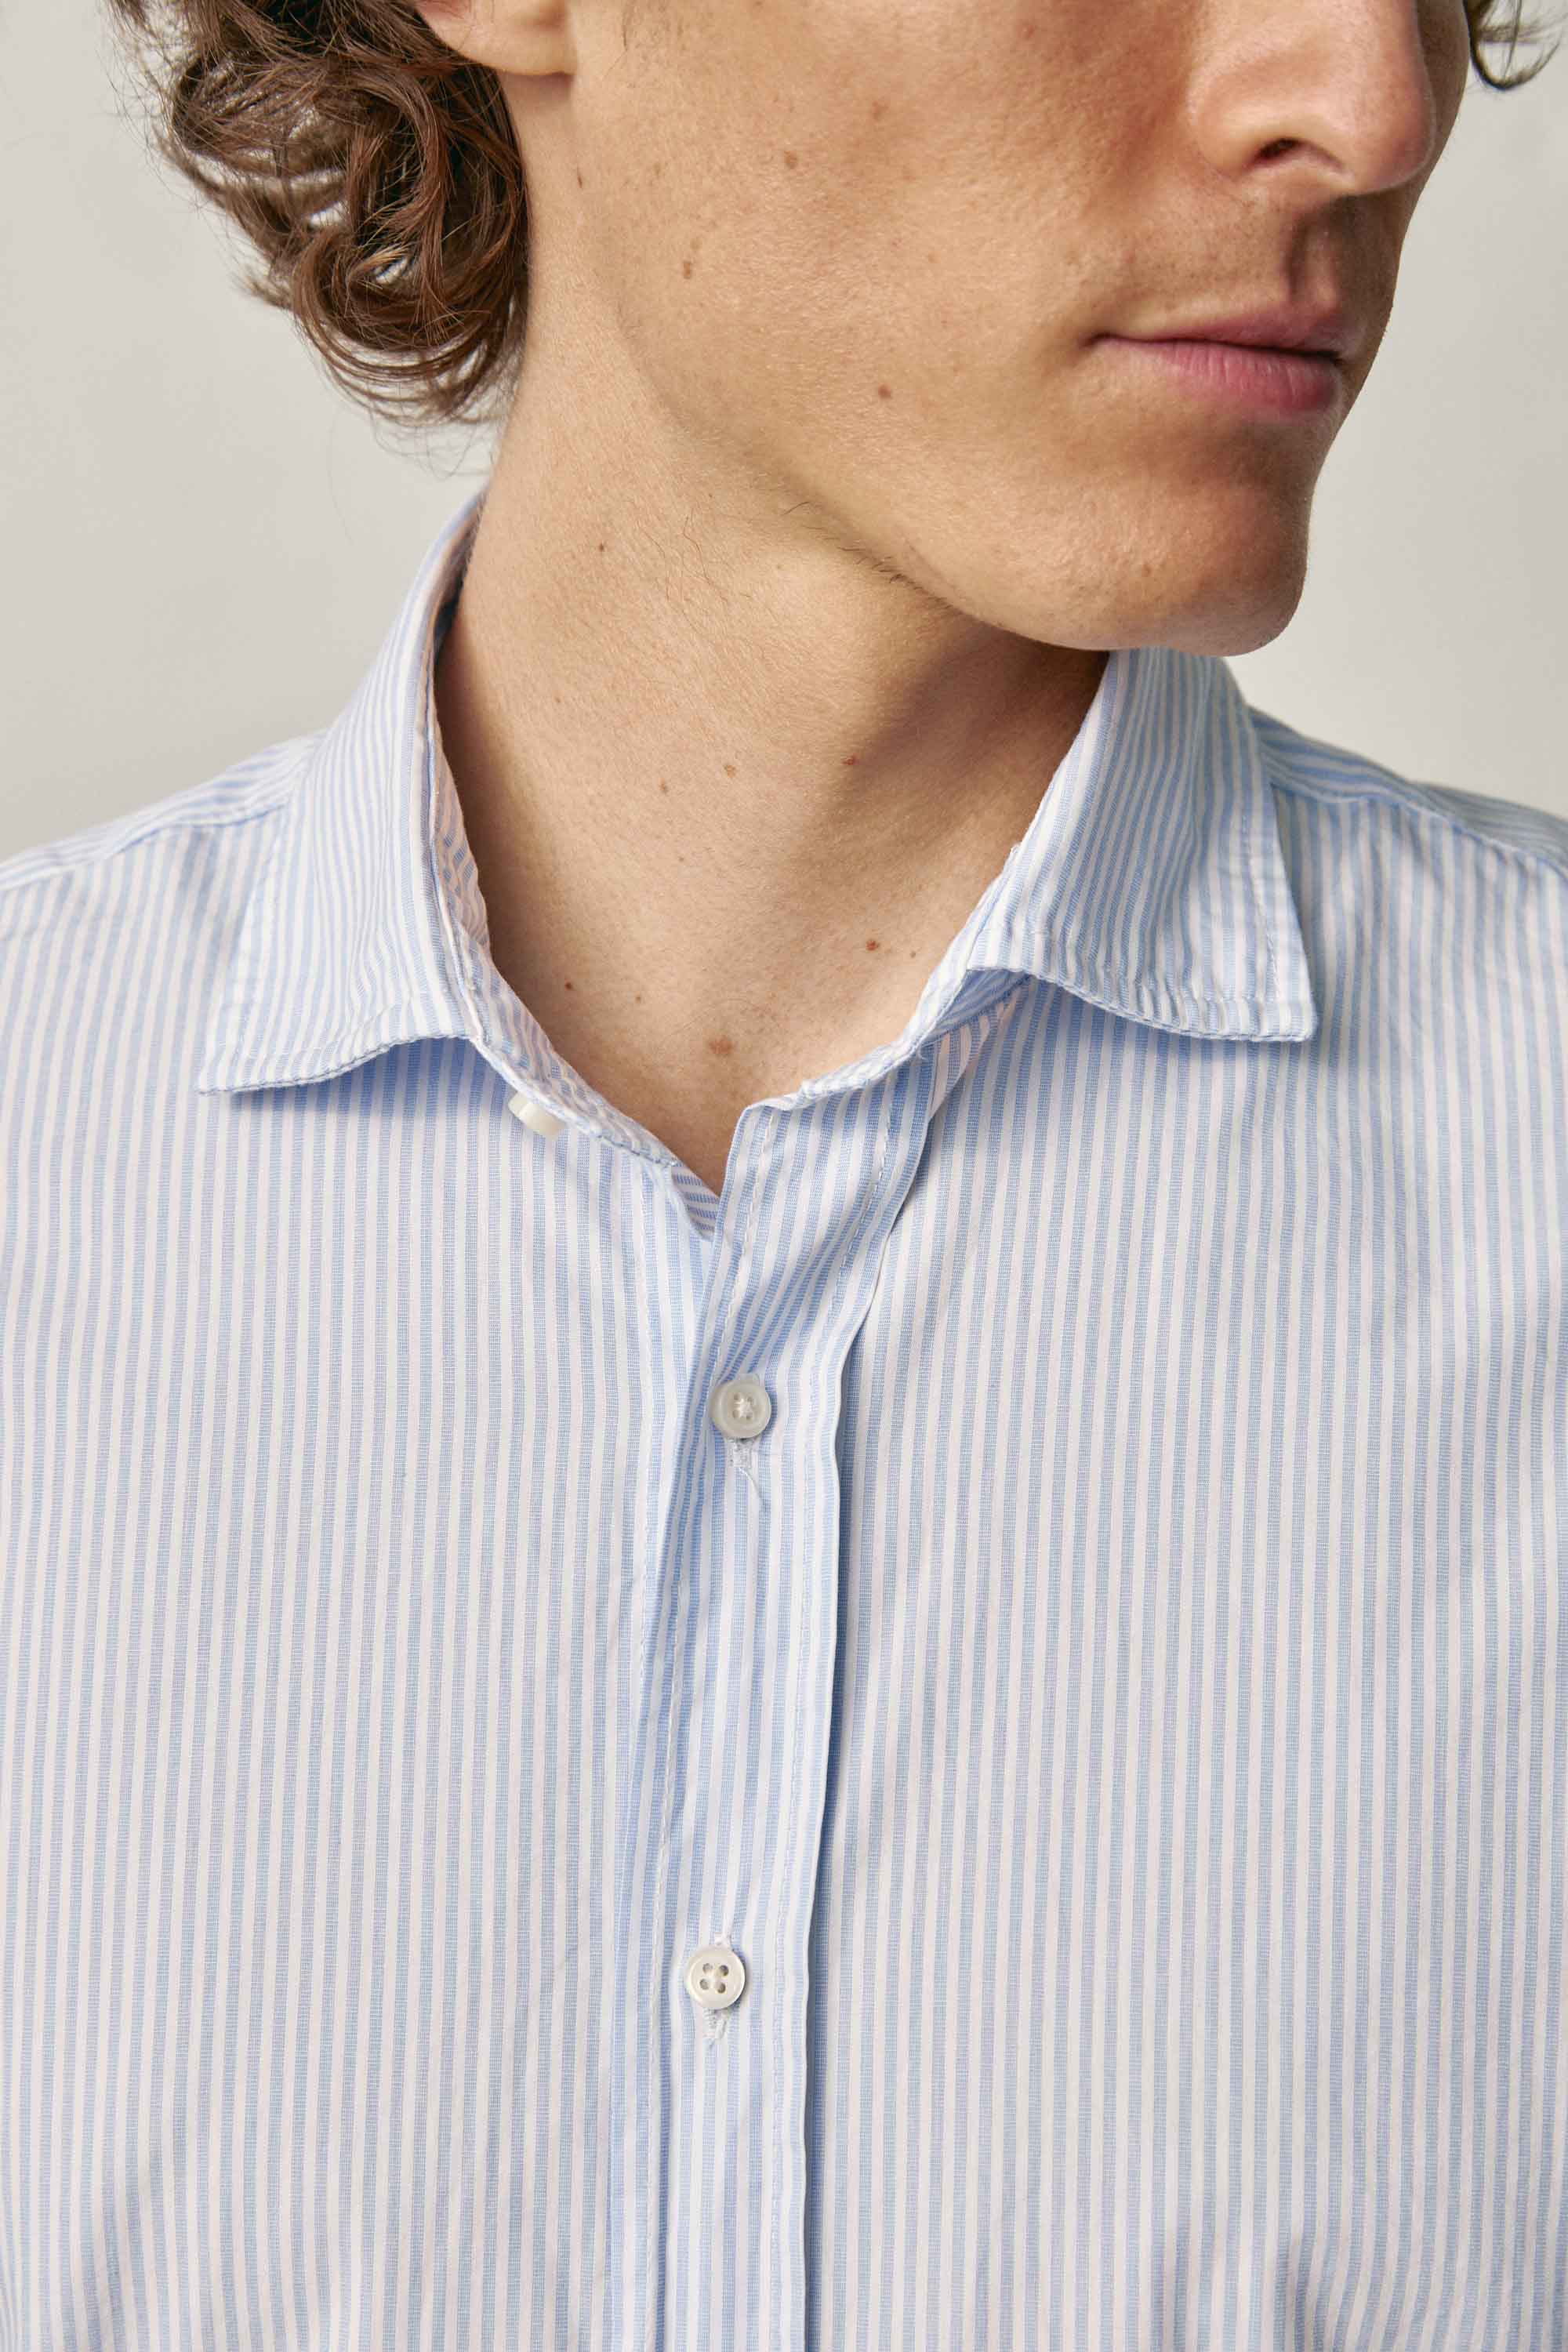 Camisa de Algodón - Algodón Rayas Azul y Blanco